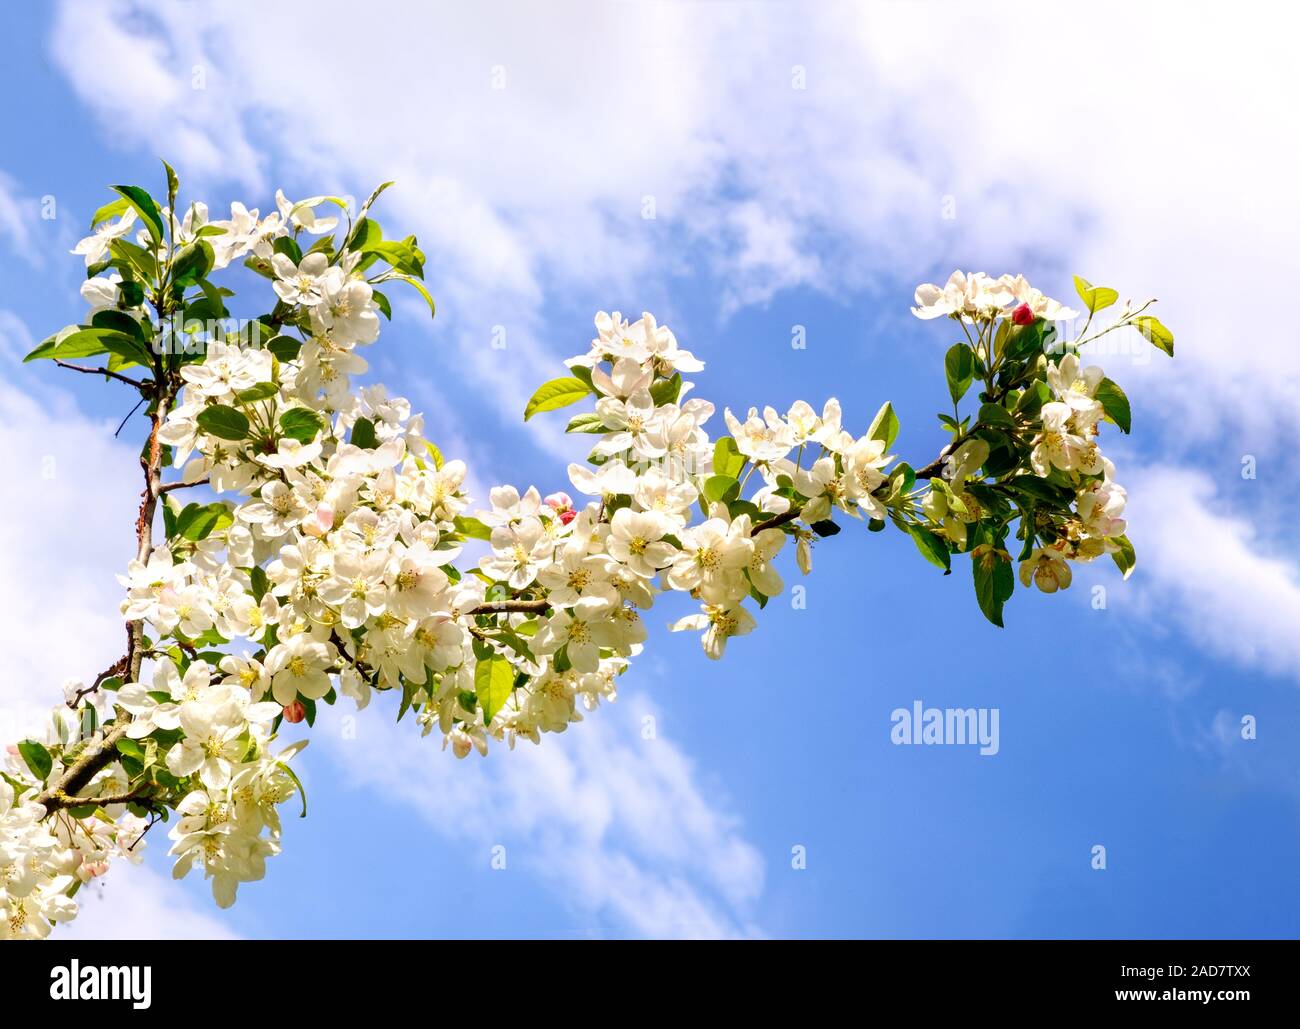 Flowers Blossoming Cherry Prunus avium in spring. Stock Photo